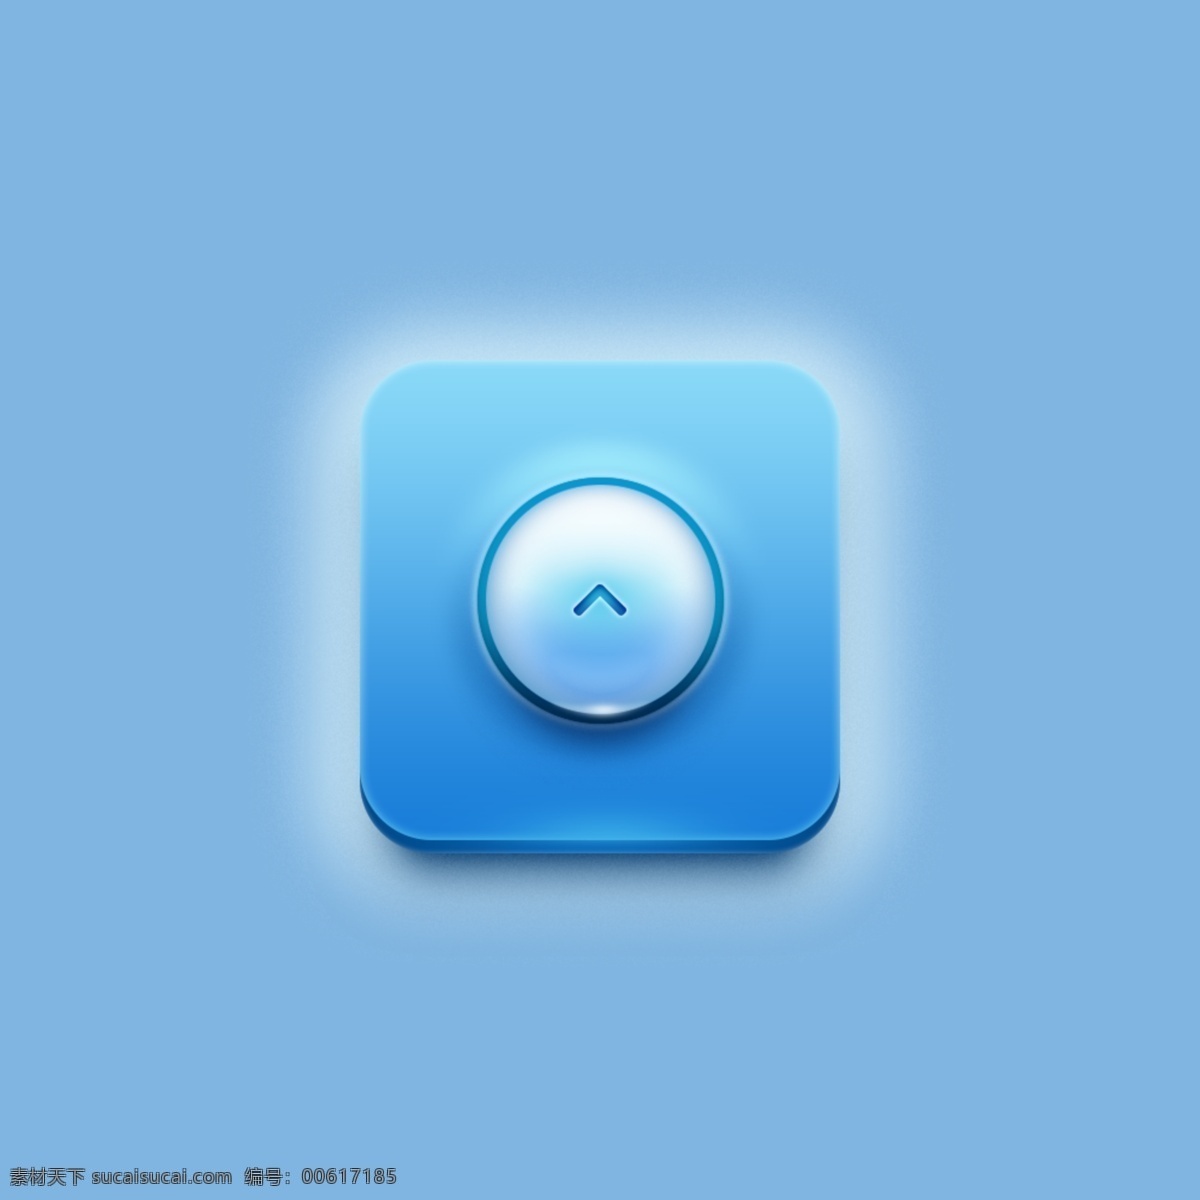 蓝色 光影 app icon 手机 app图标